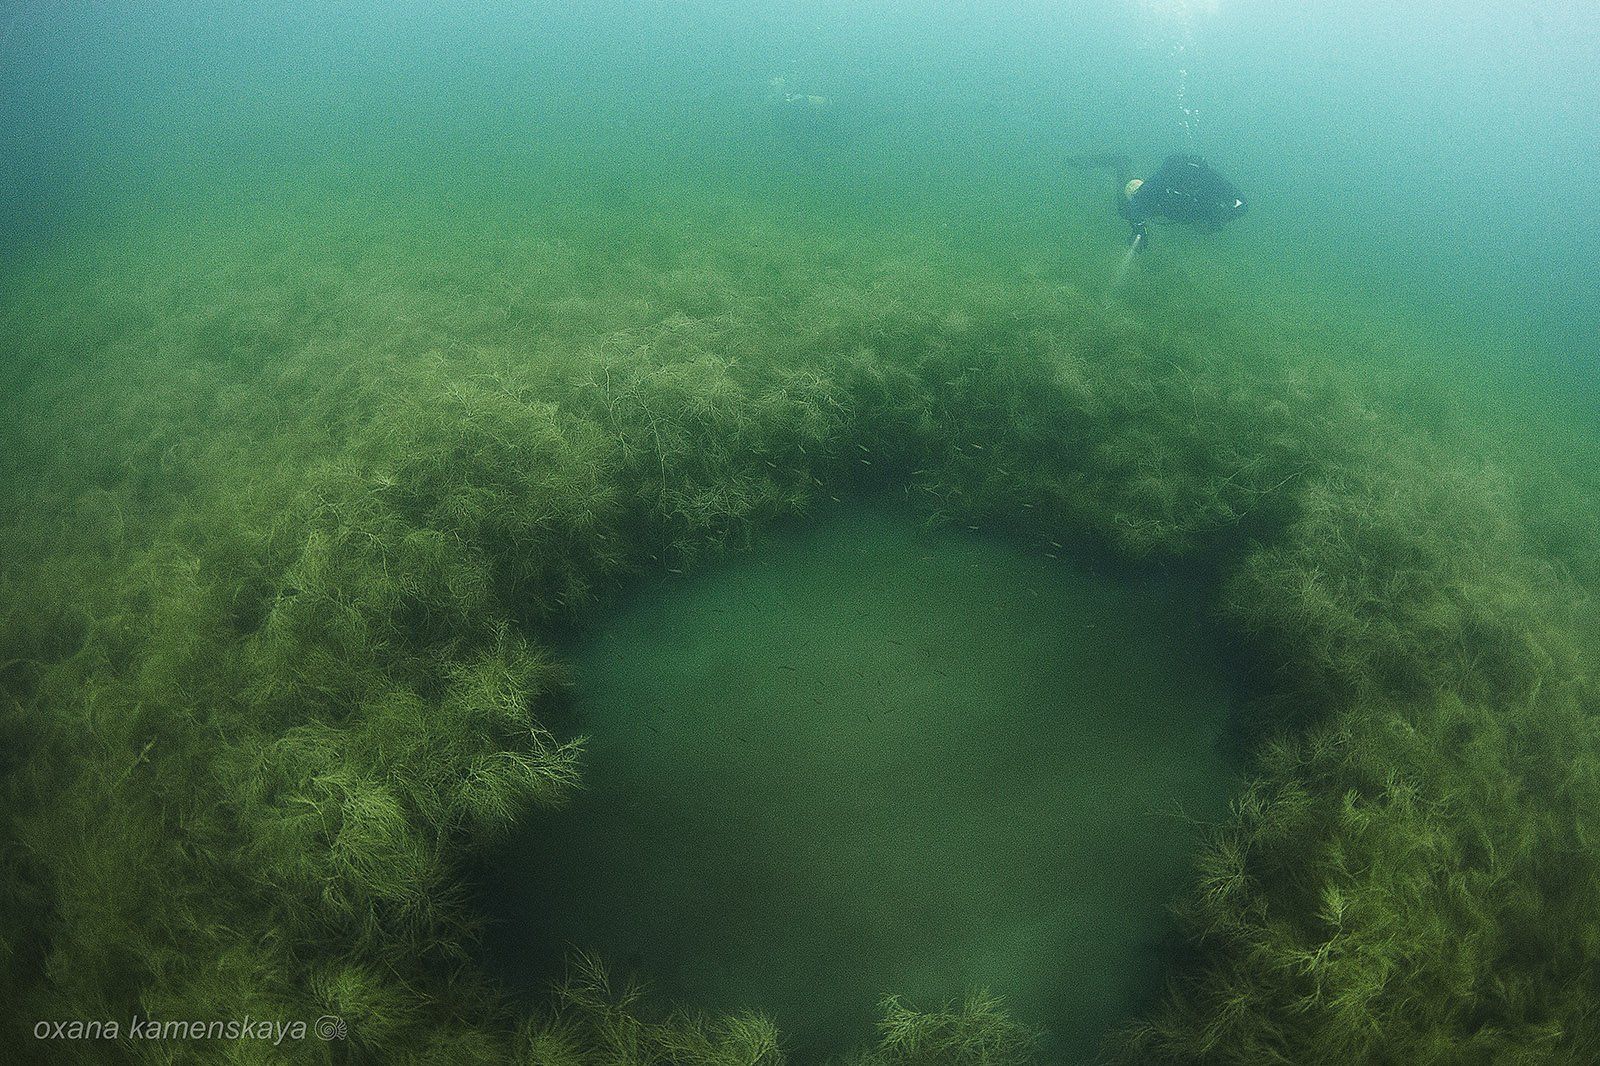 underwater wreck diver mine rummu, Оксана Каменская